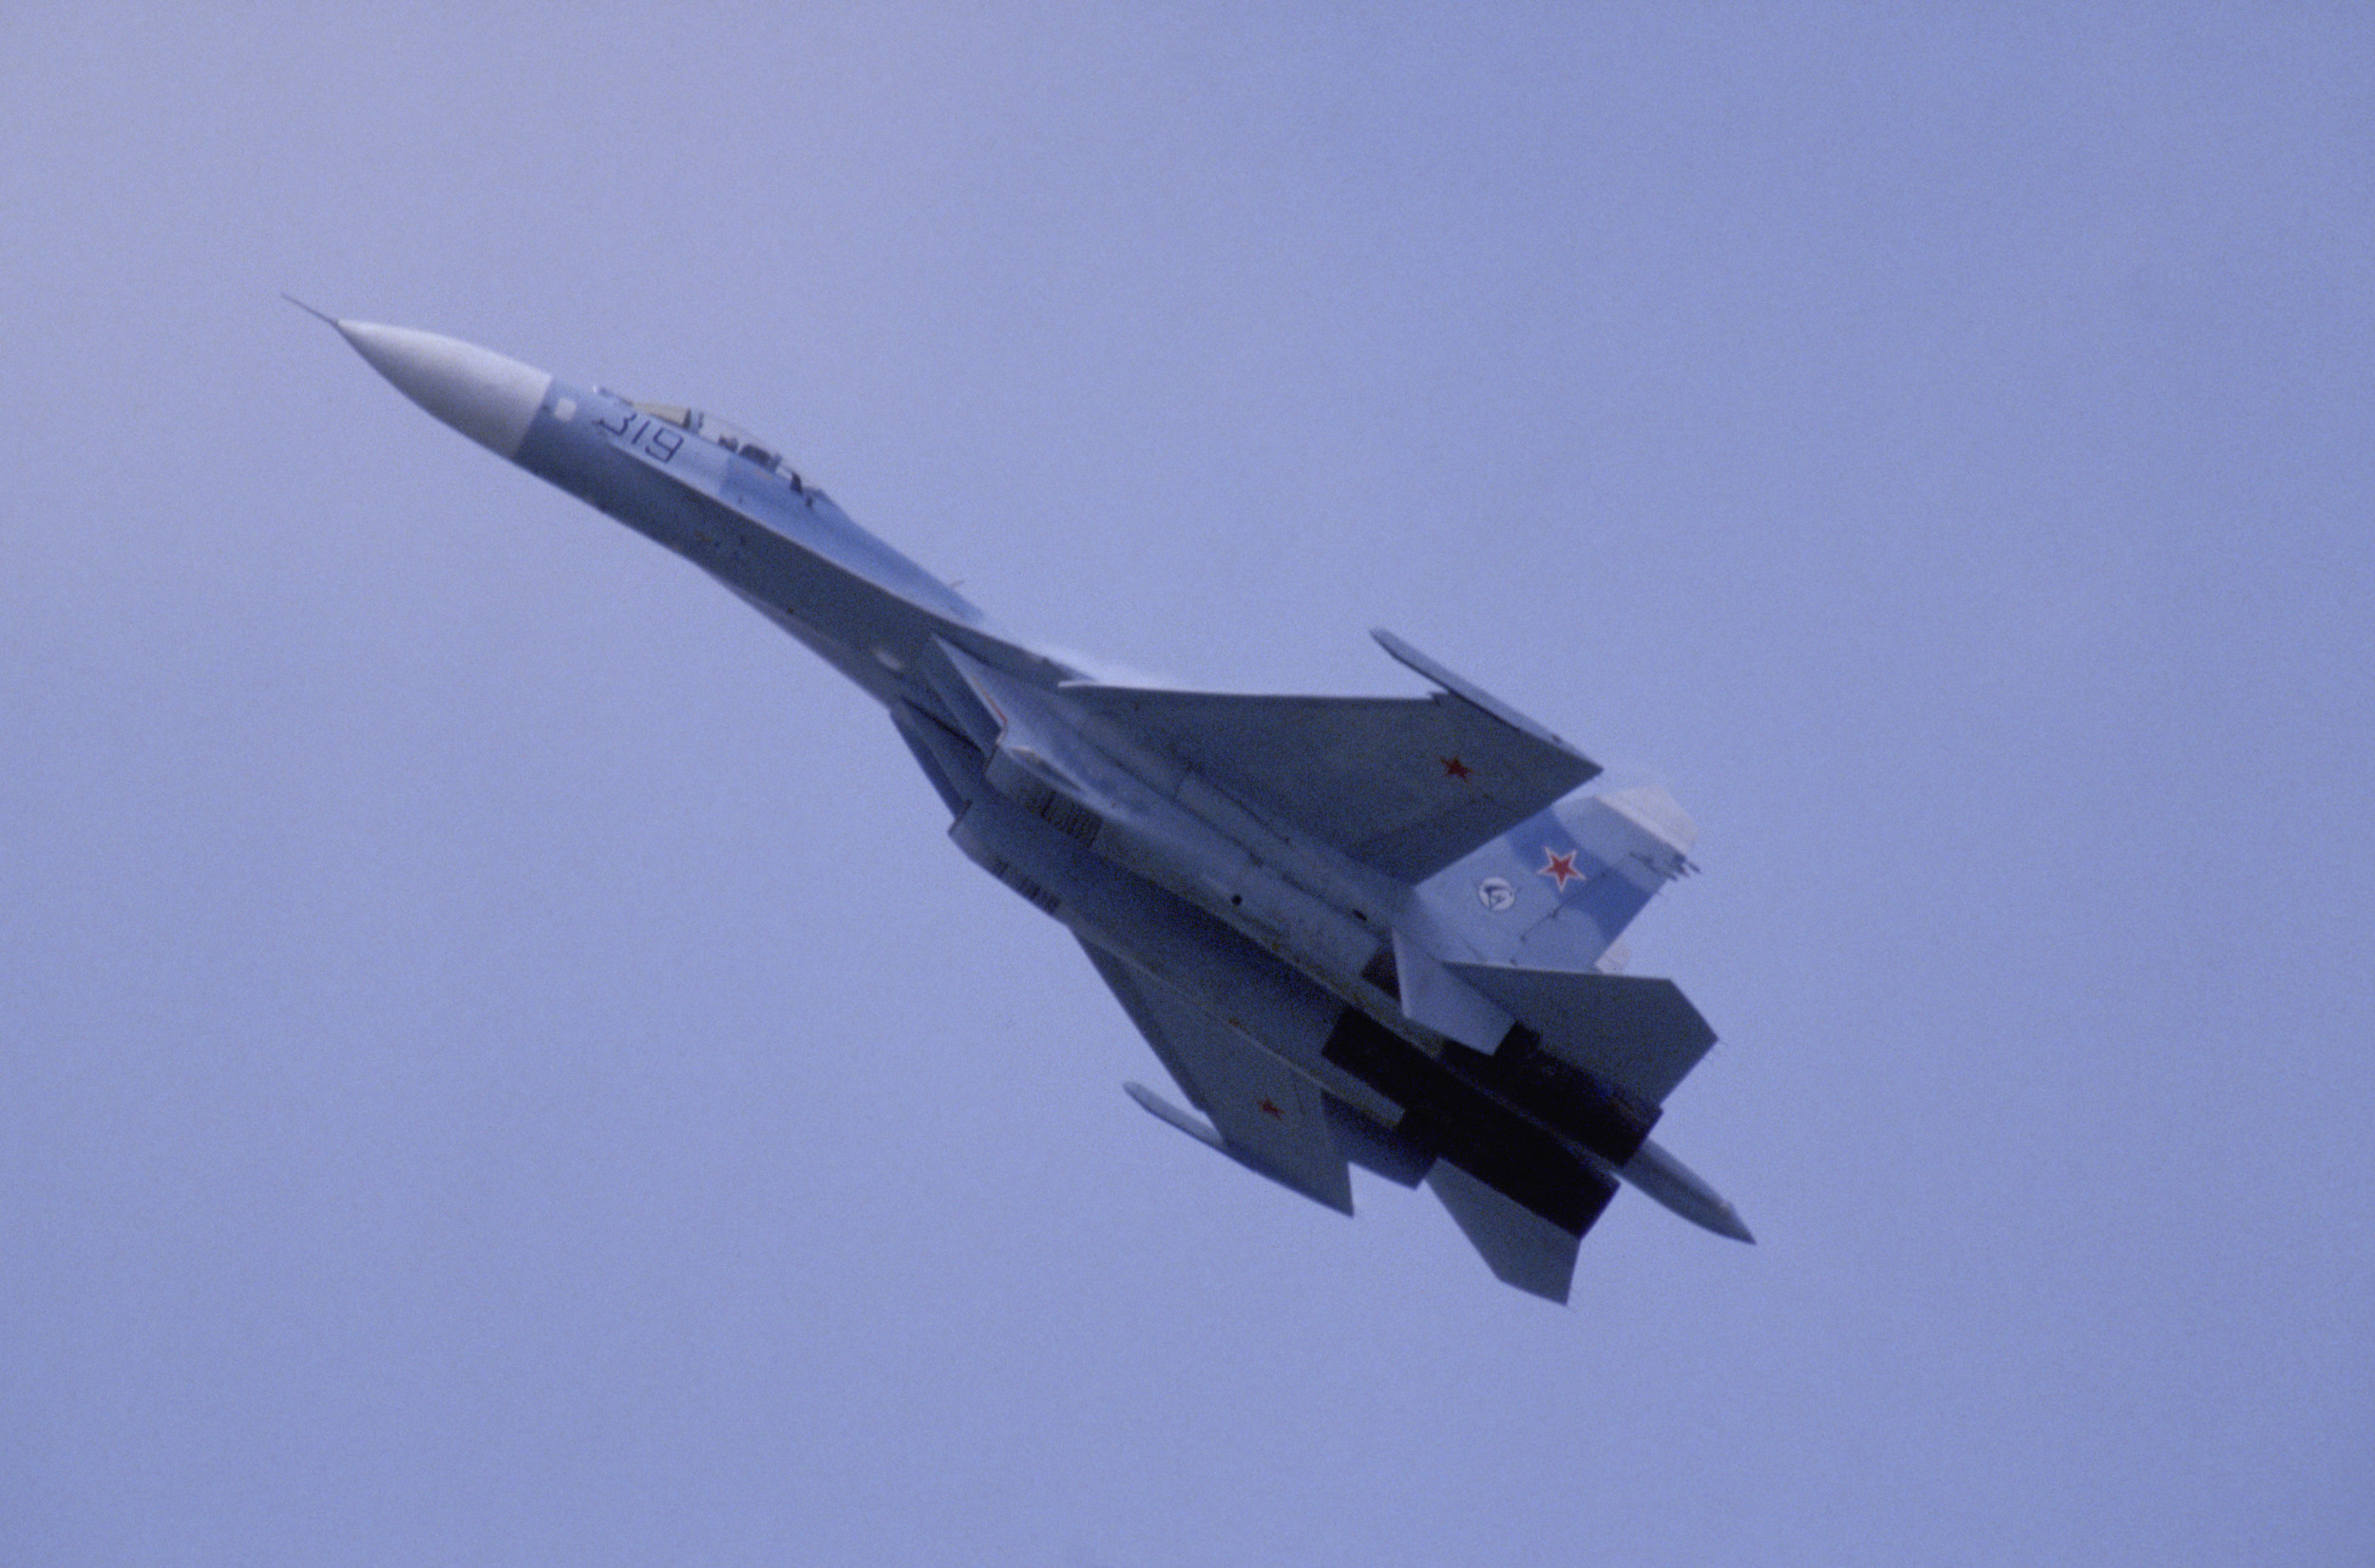 روسيا تسقط مقاتلتها من طراز Su-27 فوق البحر الأسود: كييف